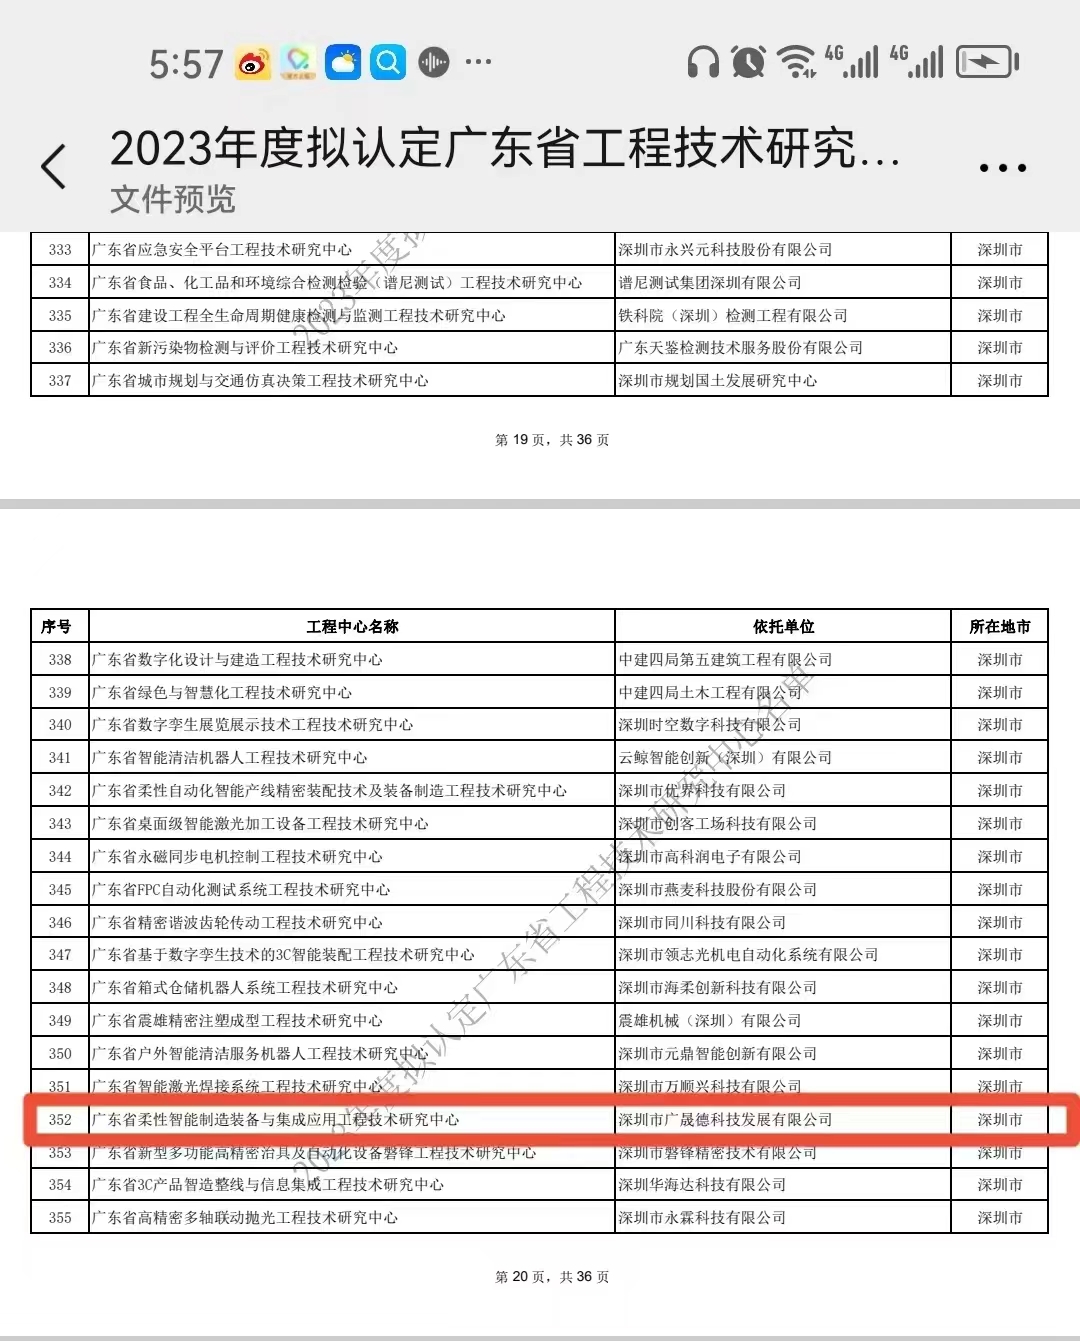 深圳c7娱乐官网荣获2023年度广东省工程技术研究中心认定